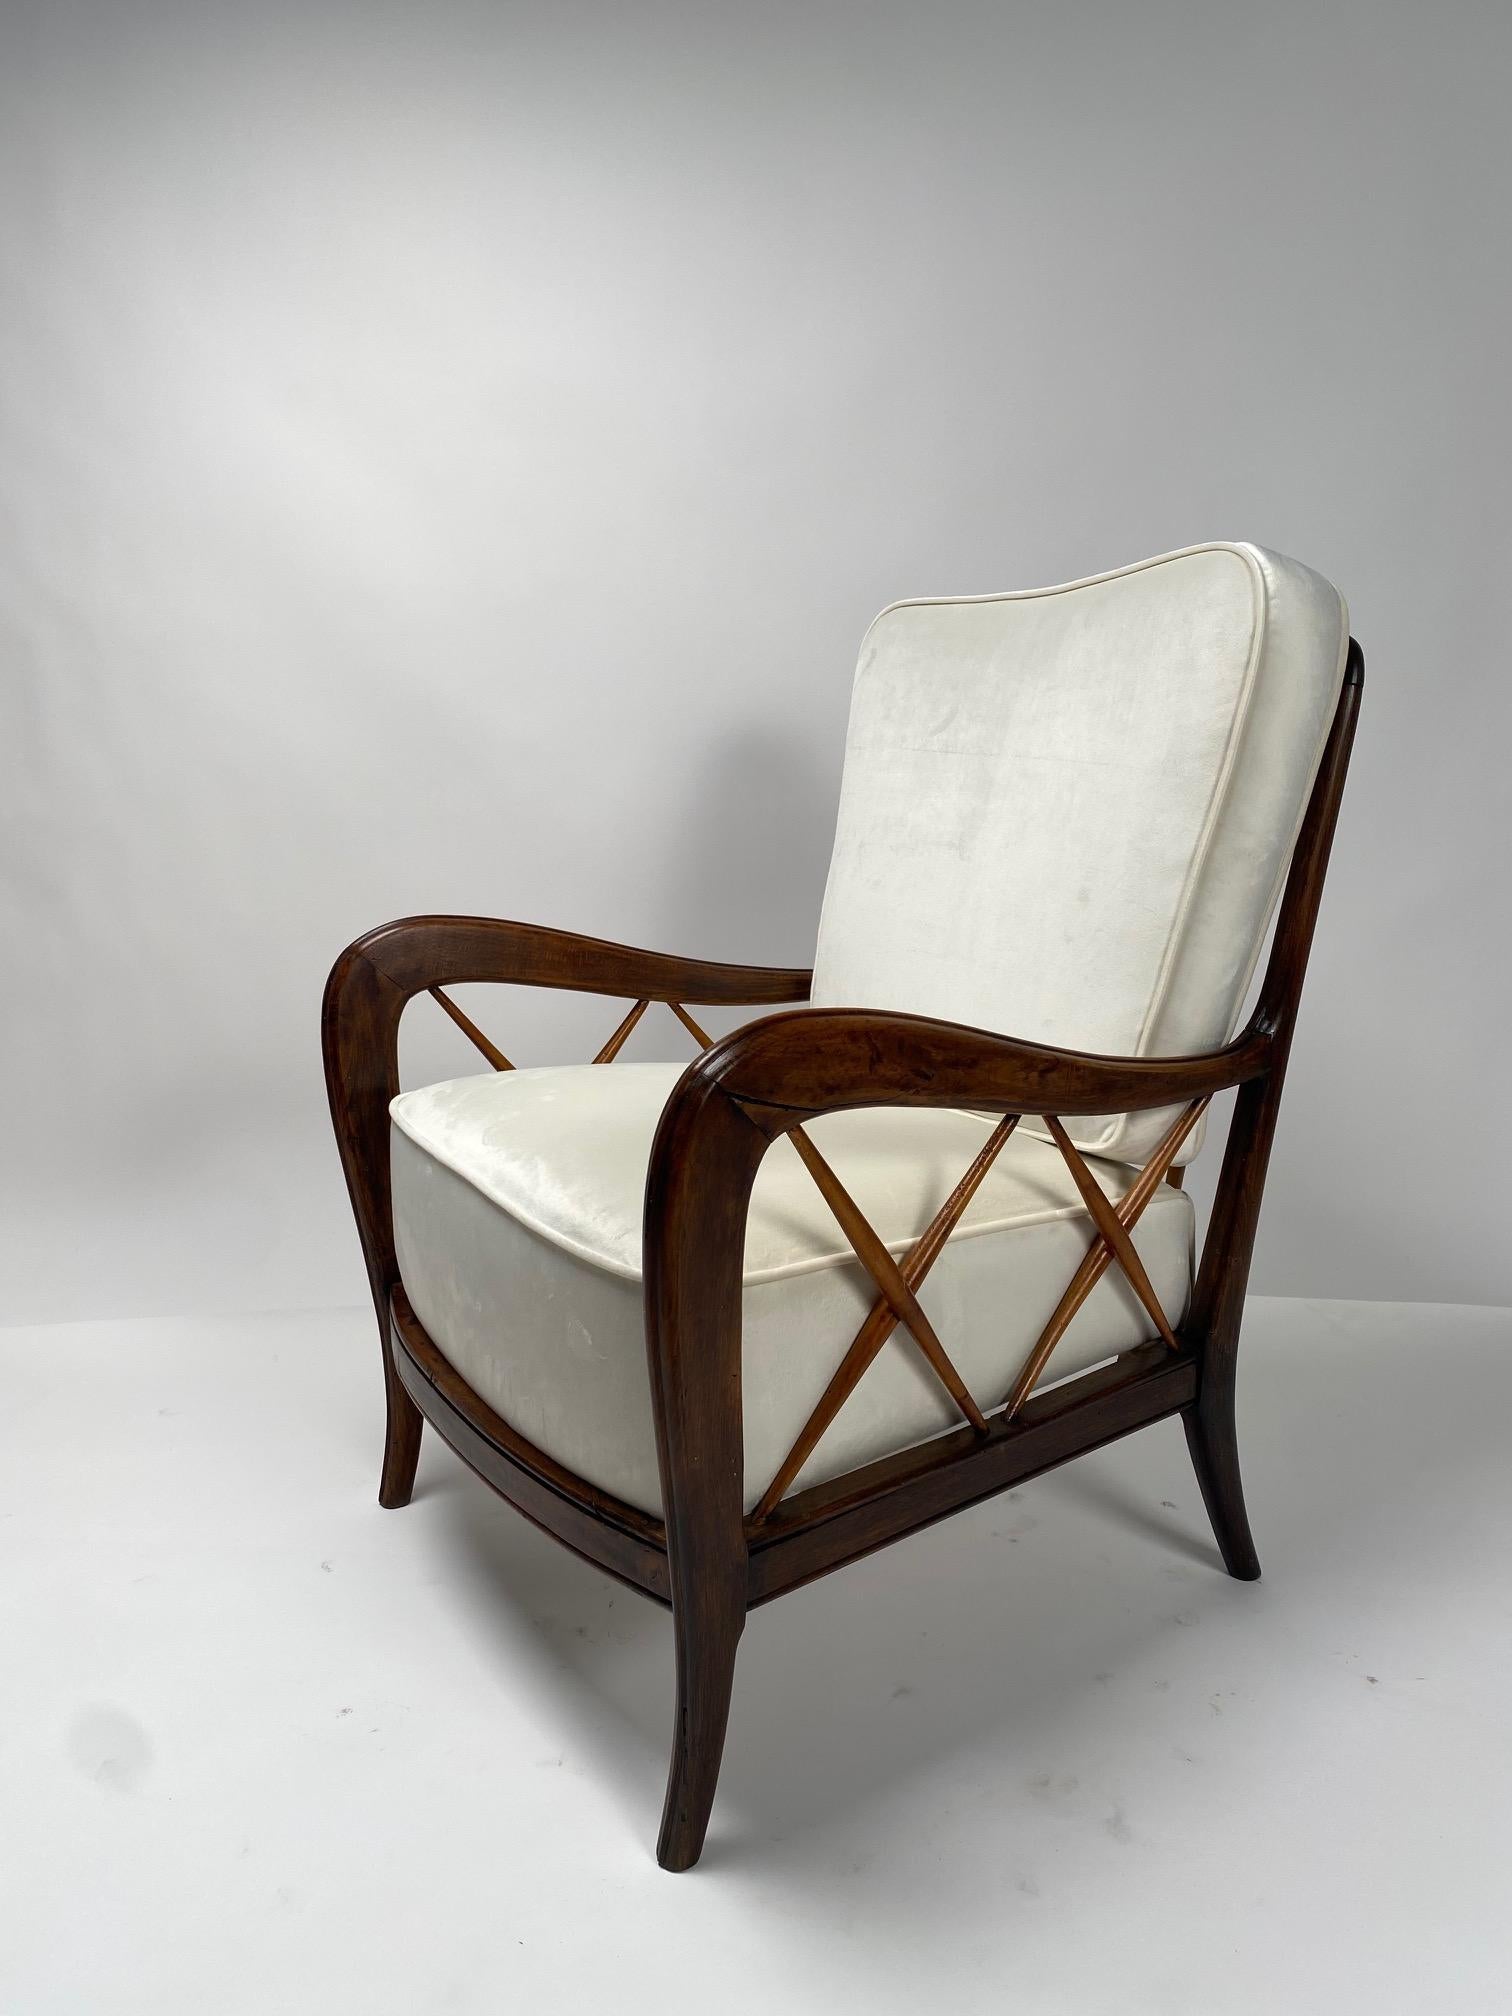 Paire de fauteuils des années 1950 par Paolo Buffa, Italie, années 1950

L'un des modèles les plus emblématiques et représentatifs du design italien des années 1950, structure en bois et coussins récemment retapissés de velours blanc. Ce sont des